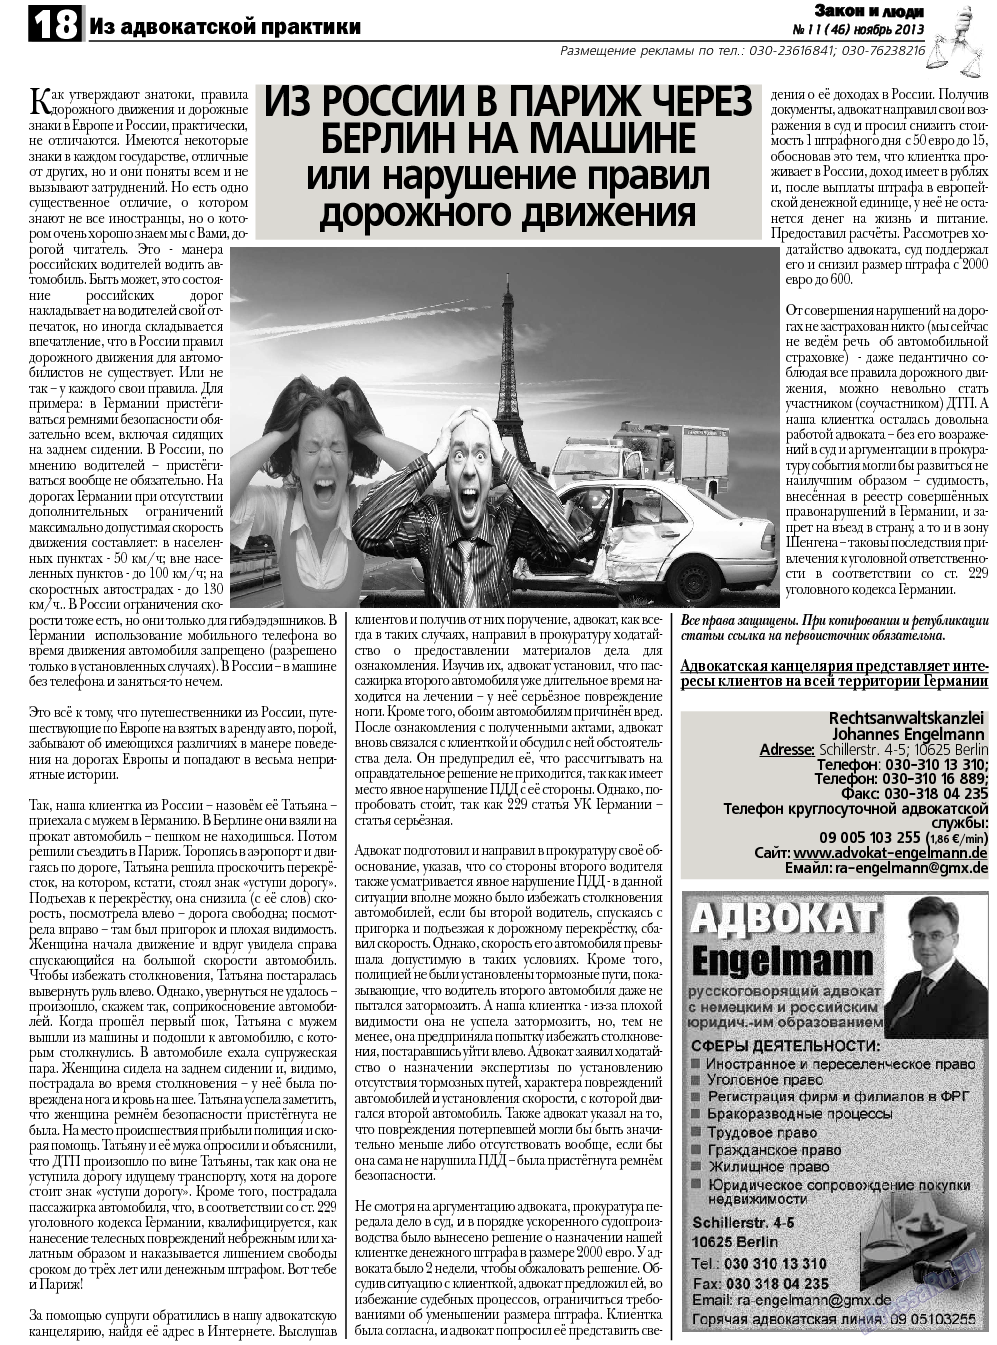 Закон и люди, газета. 2013 №11 стр.18